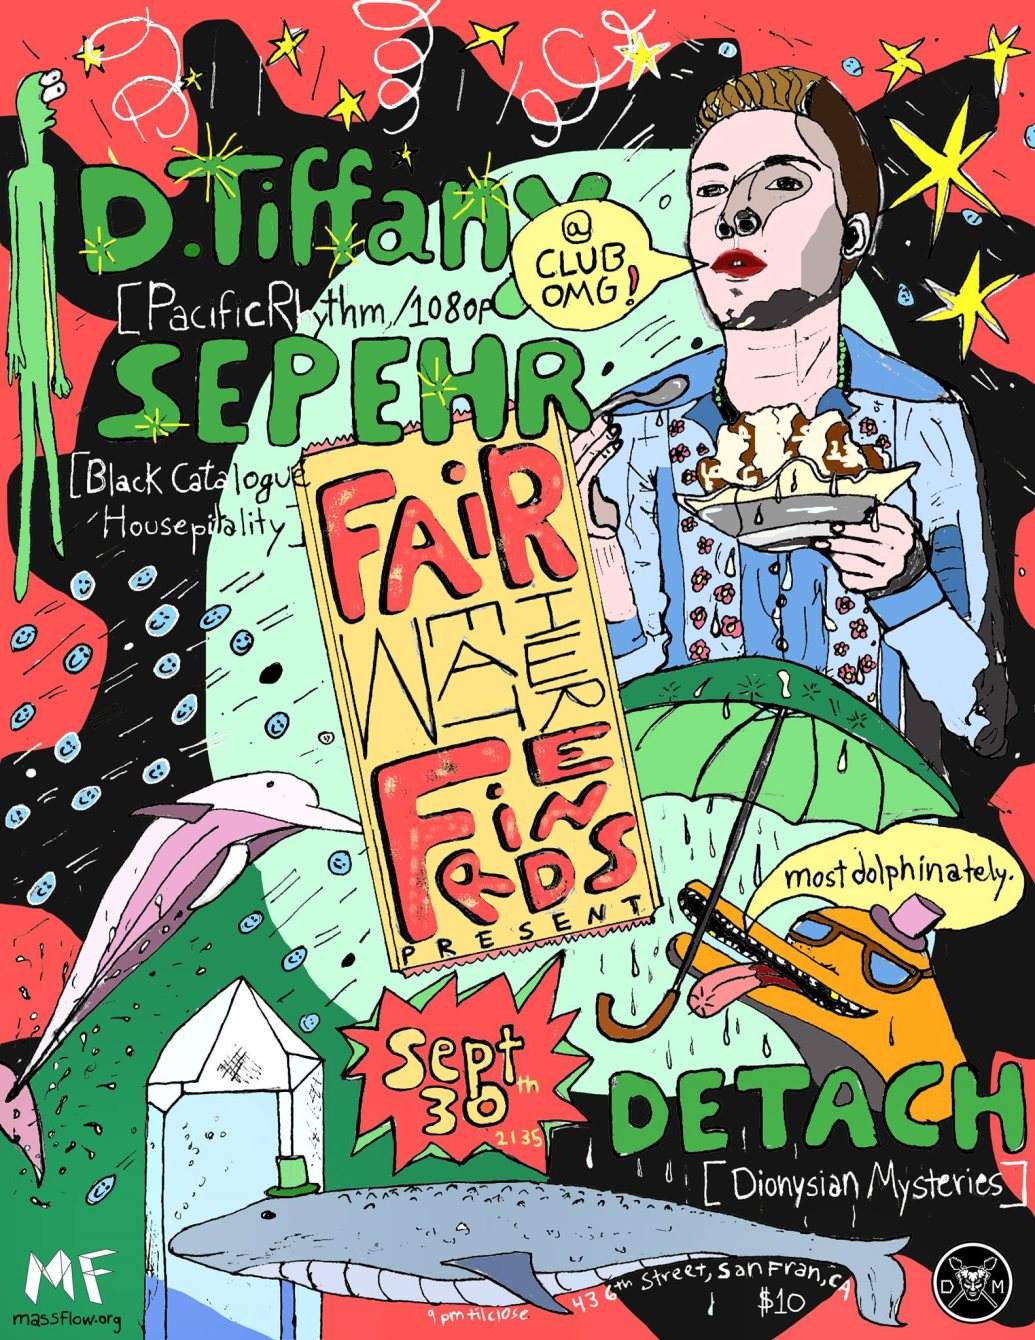 D. Tiffany, Sepehr, Detach: presented by the Fér Wethr Frndz - Página frontal